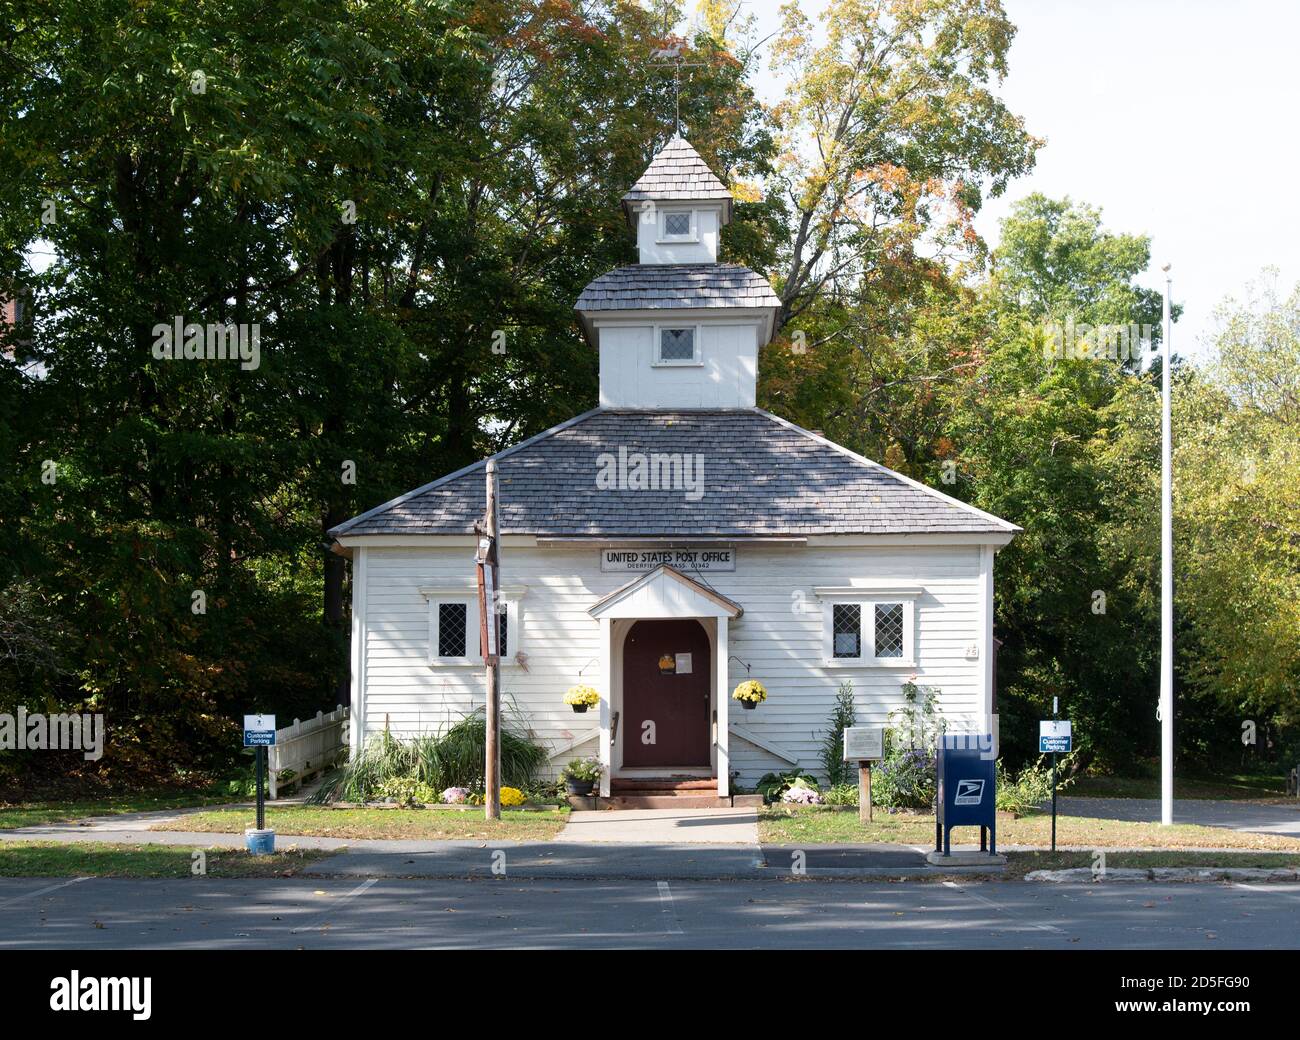 Village historique de Deerfield, Deerfield, Massachusetts, États-Unis, bureau de poste américain. Banque D'Images